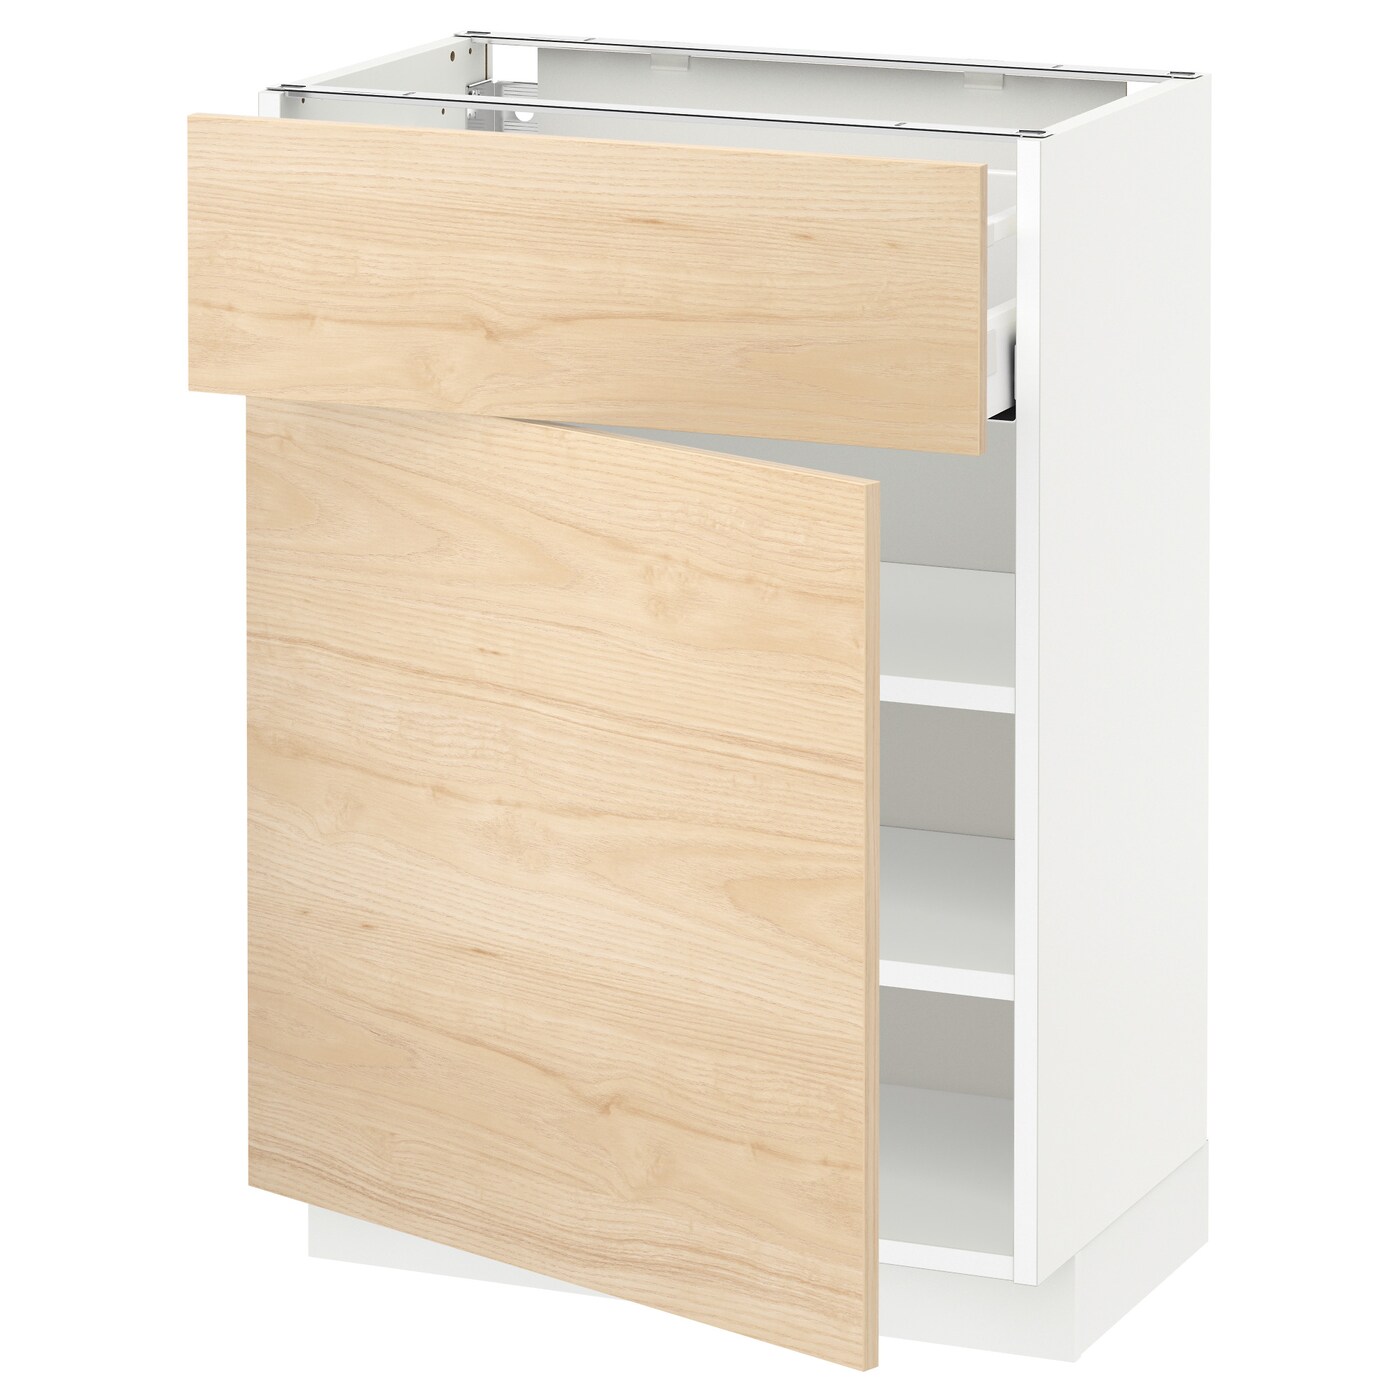 Напольный кухонный шкаф  - IKEA METOD MAXIMERA, 88x39x60см, белый/светлый ясень, МЕТОД МАКСИМЕРА ИКЕА